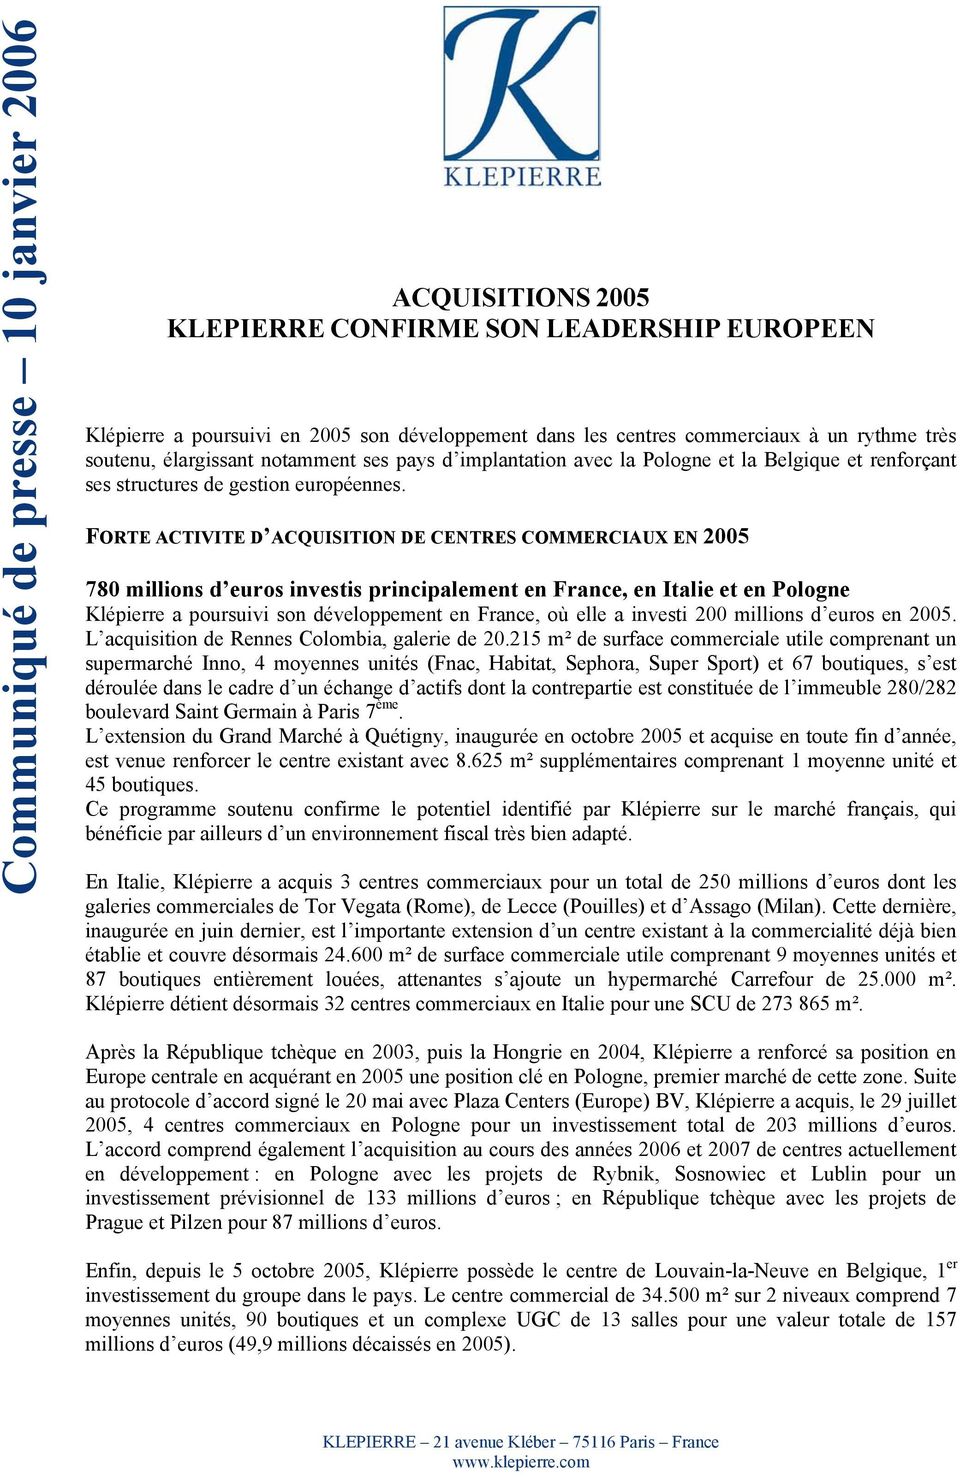 FORTE ACTIVITE D ACQUISITION DE CENTRES COMMERCIAUX EN 2005 780 millions d euros investis principalement en France, en Italie et en Pologne Klépierre a poursuivi son développement en France, où elle